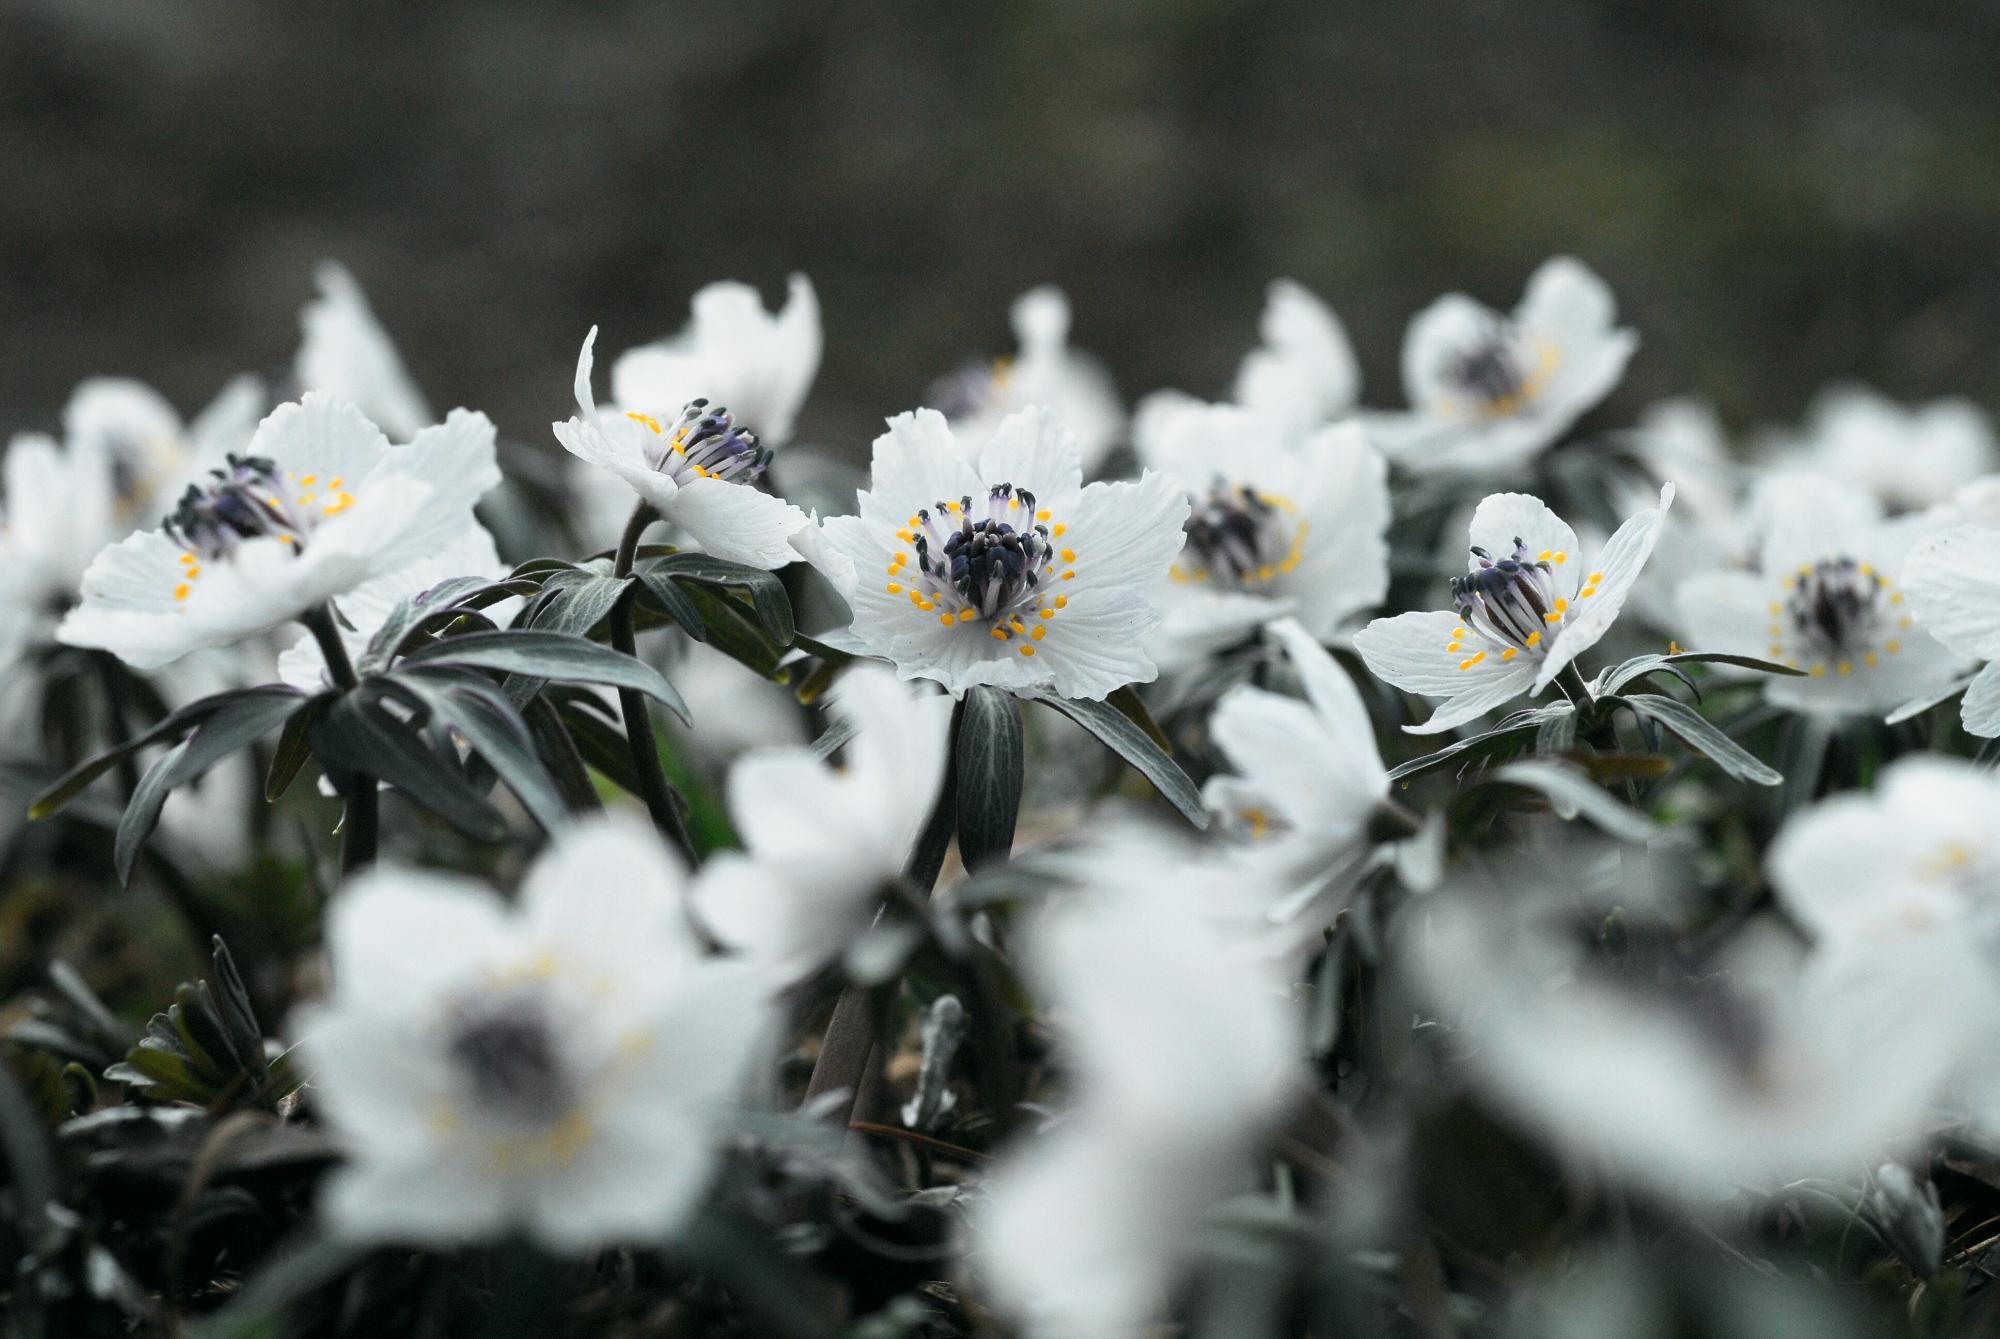 上島のセツブンソウが咲き誇る様子を接写した写真